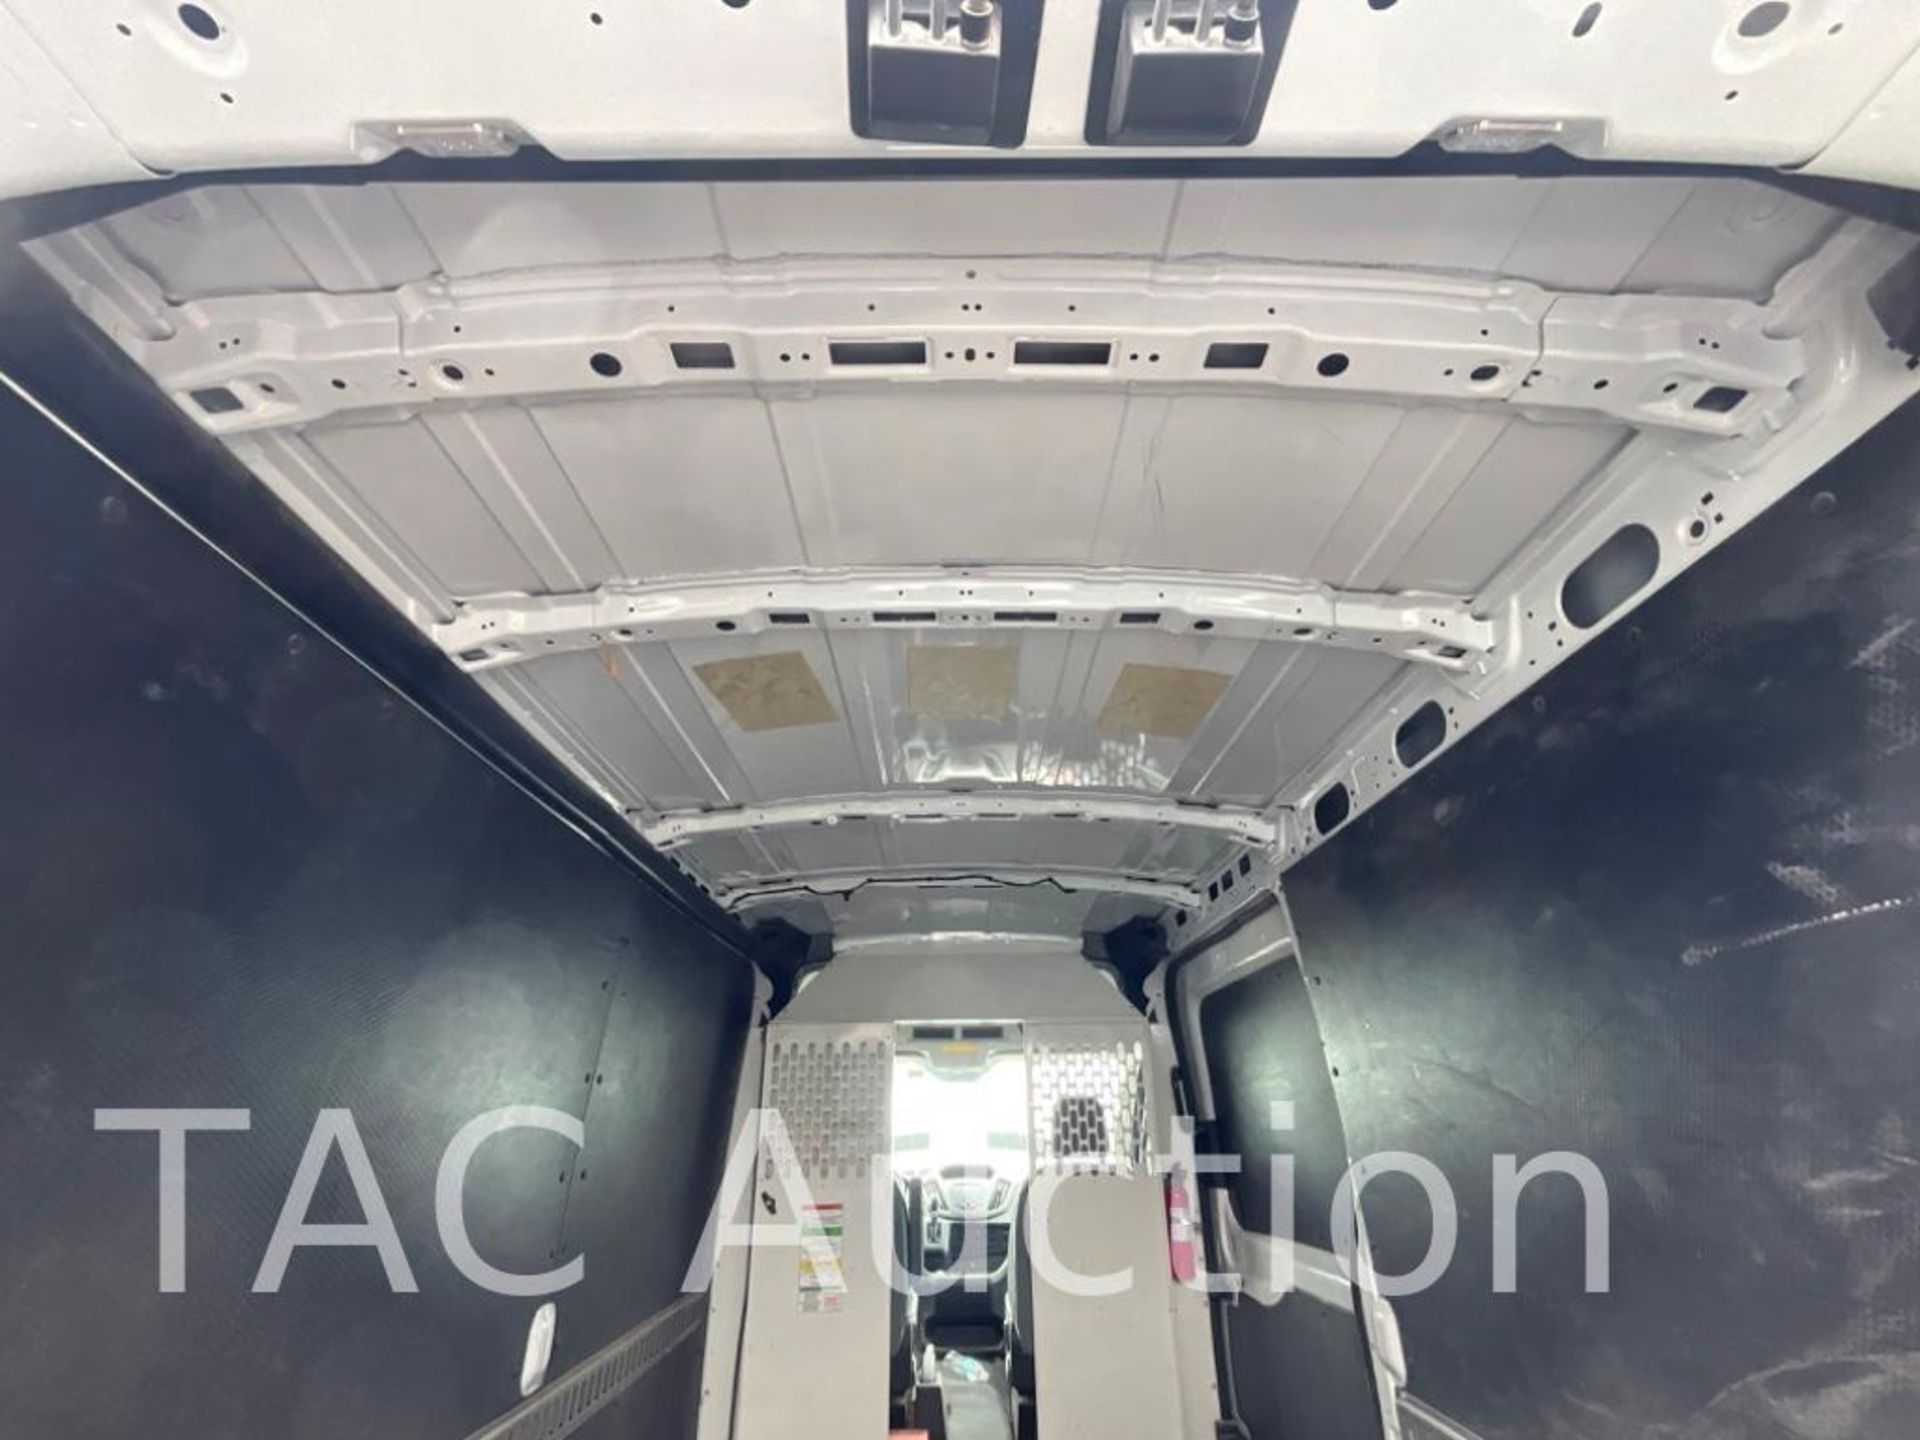 2019 Ford Transit 150 Cargo Van - Image 27 of 42